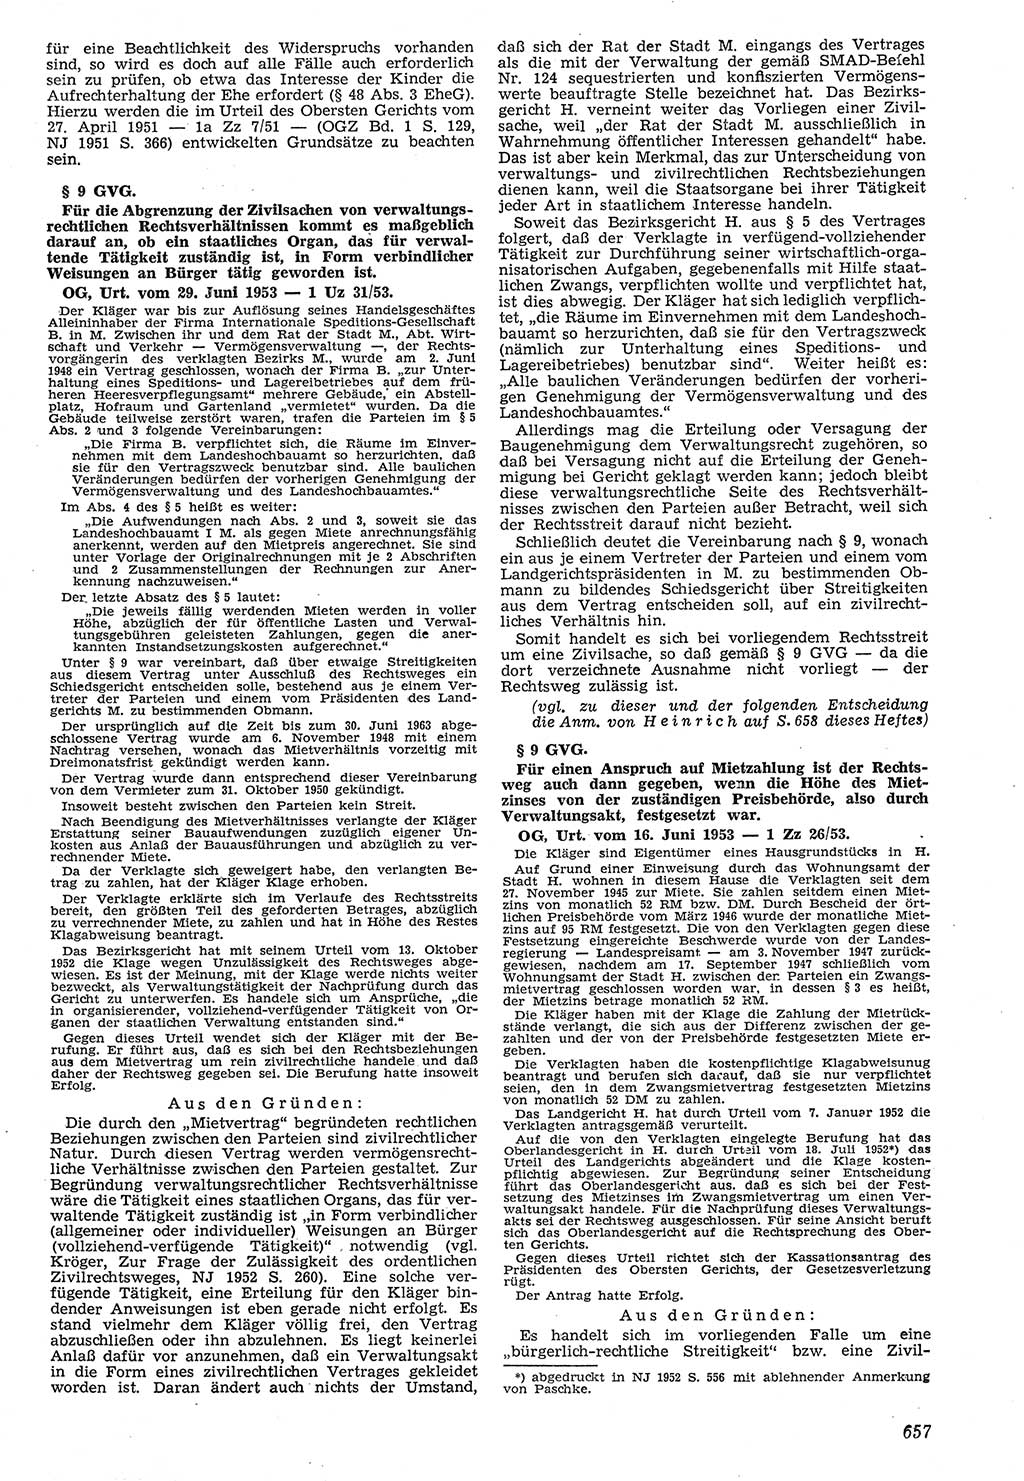 Neue Justiz (NJ), Zeitschrift für Recht und Rechtswissenschaft [Deutsche Demokratische Republik (DDR)], 7. Jahrgang 1953, Seite 657 (NJ DDR 1953, S. 657)